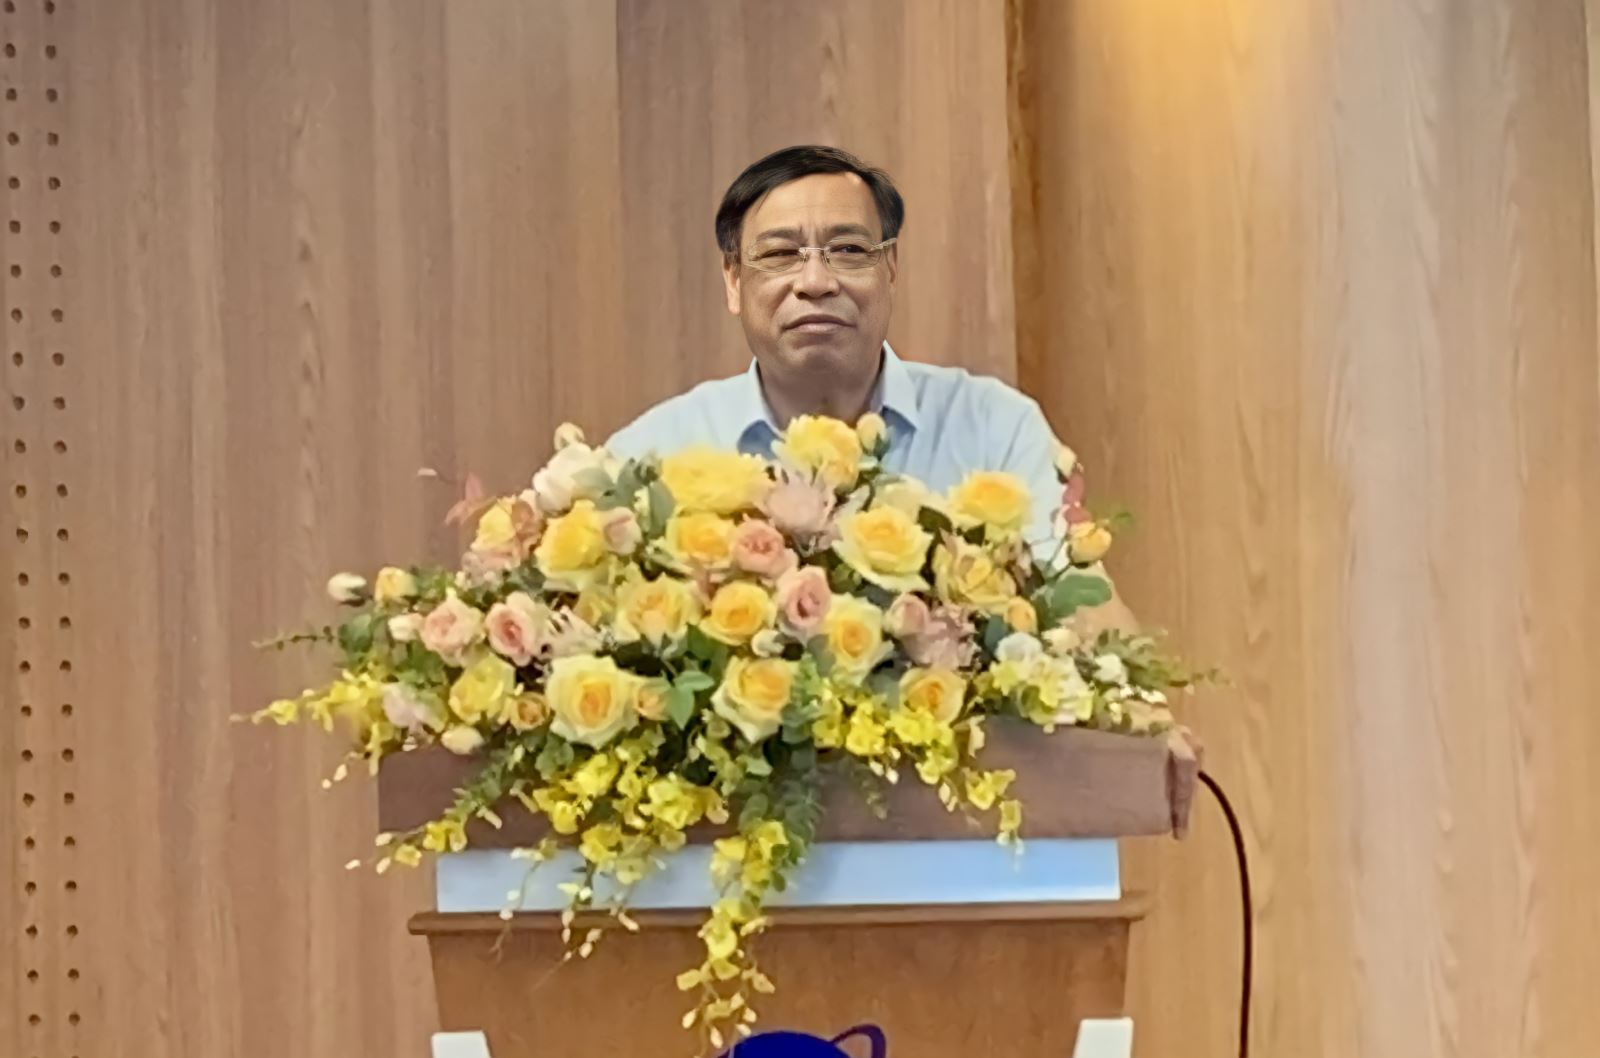 Phó giám đốc Sở Nội vụ Thanh Hoá Bùi Huy Hùng phát biểu khai mjacc Hội nghị